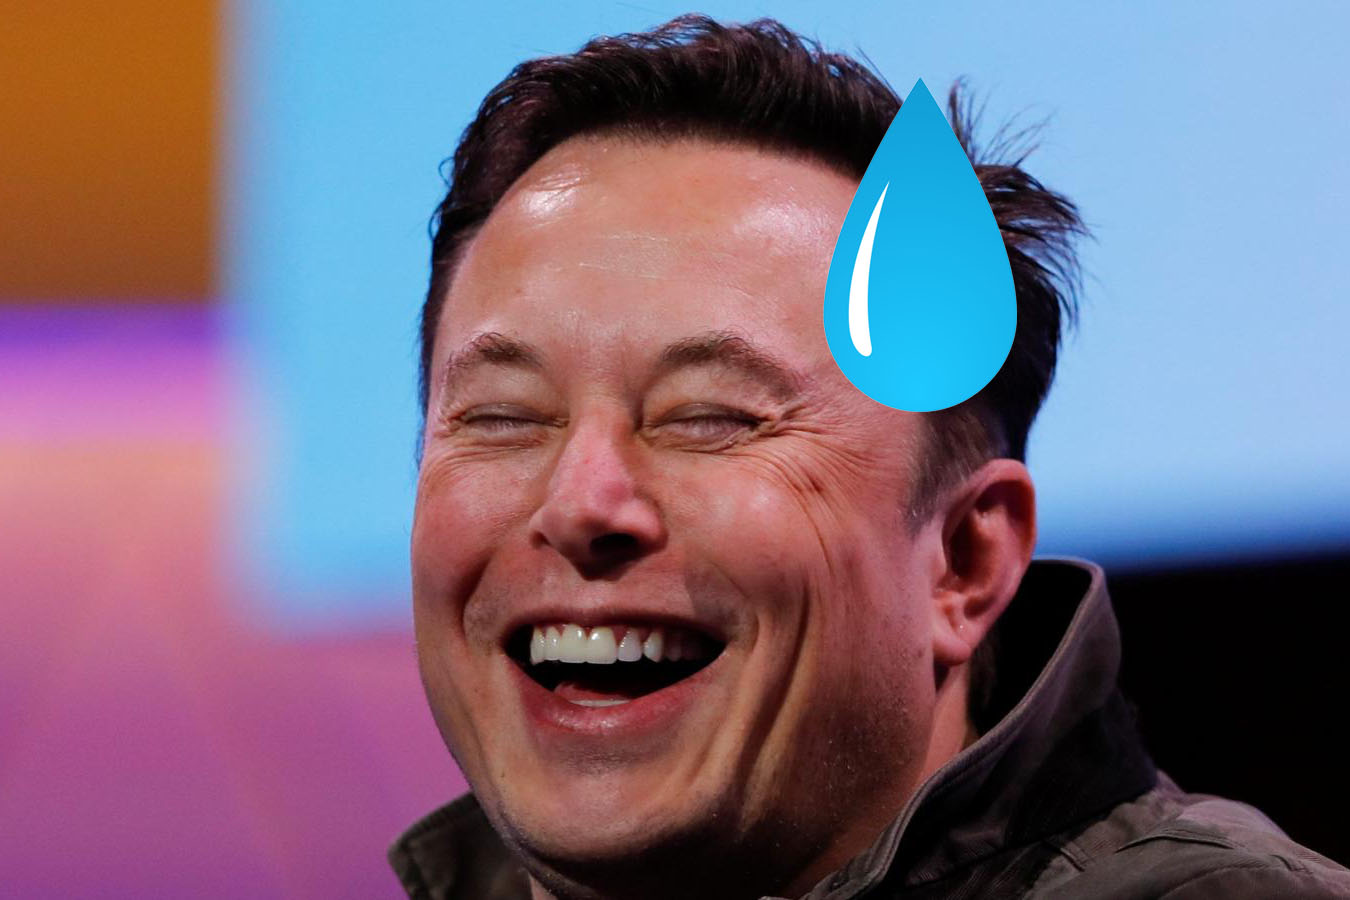 Et si Elon Musk arrêtait de donner son avis sur tout ? Taïwan apprécierait